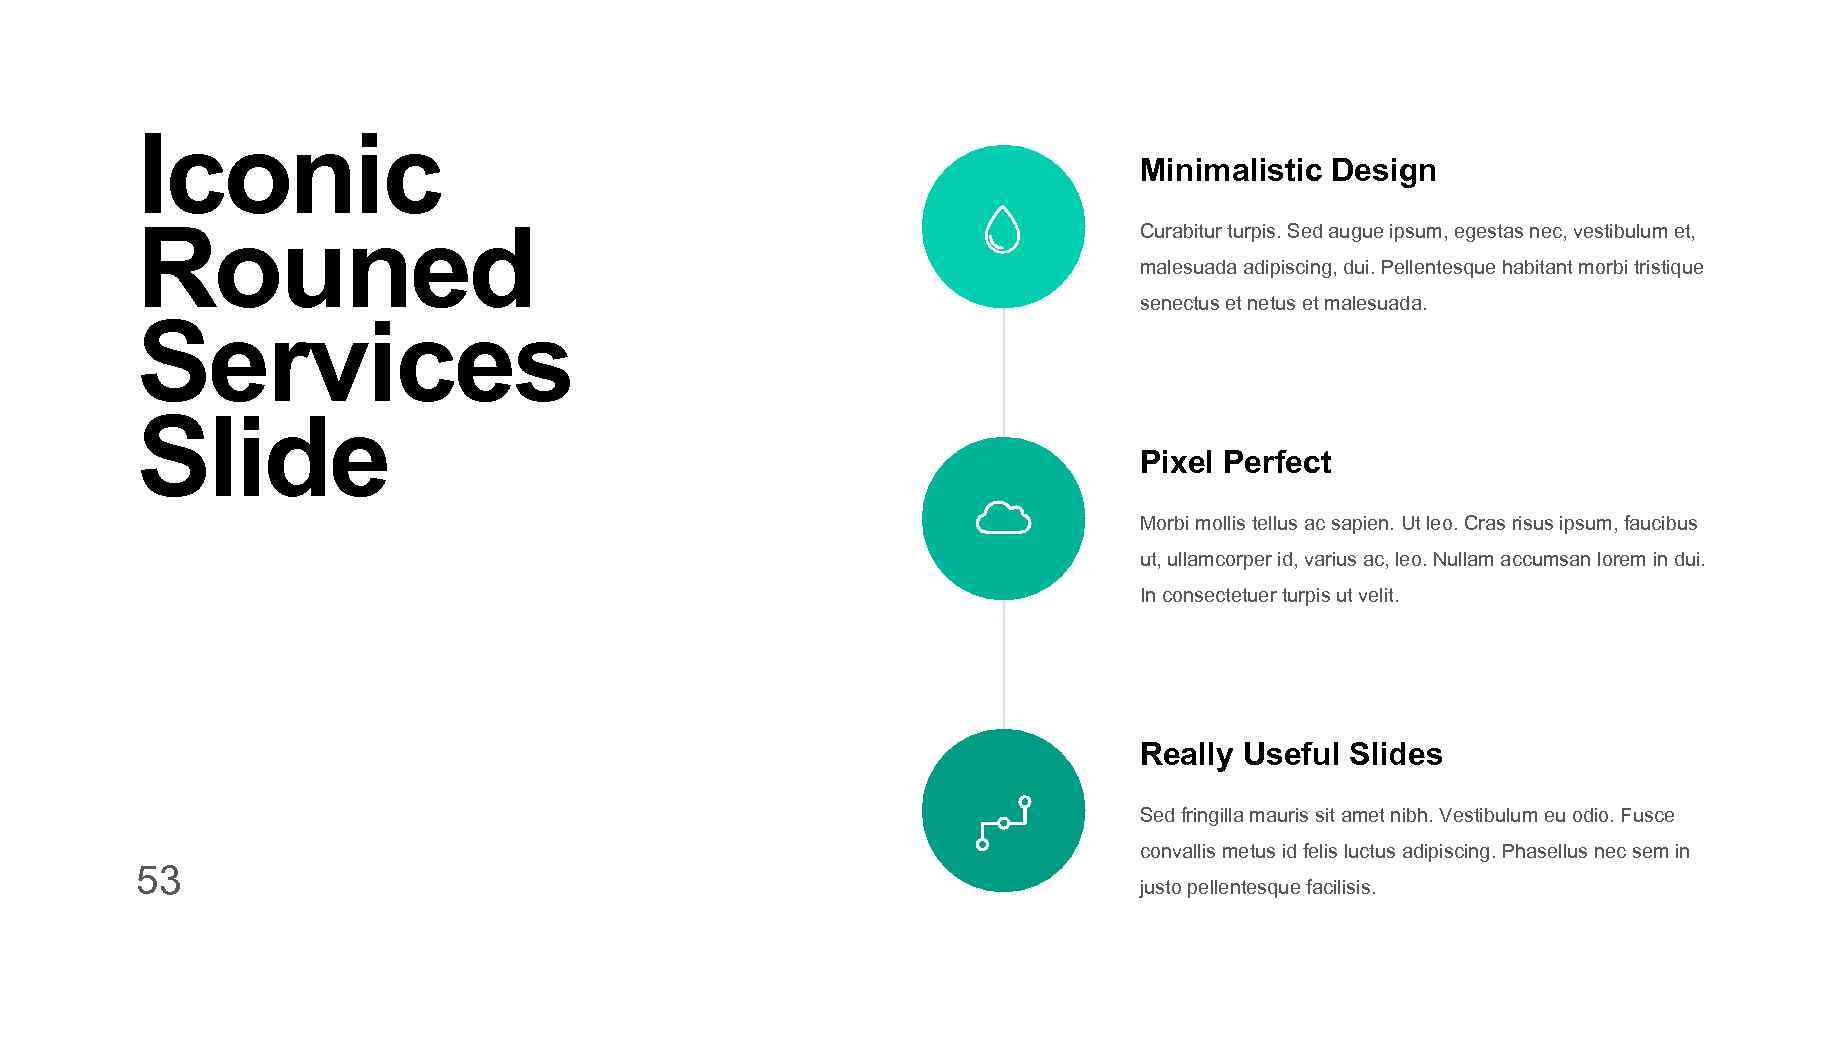 Iconic Rouned Services Slide Minimalistic Design Curabitur turpis. Sed augue ipsum, egestas nec, vestibulum